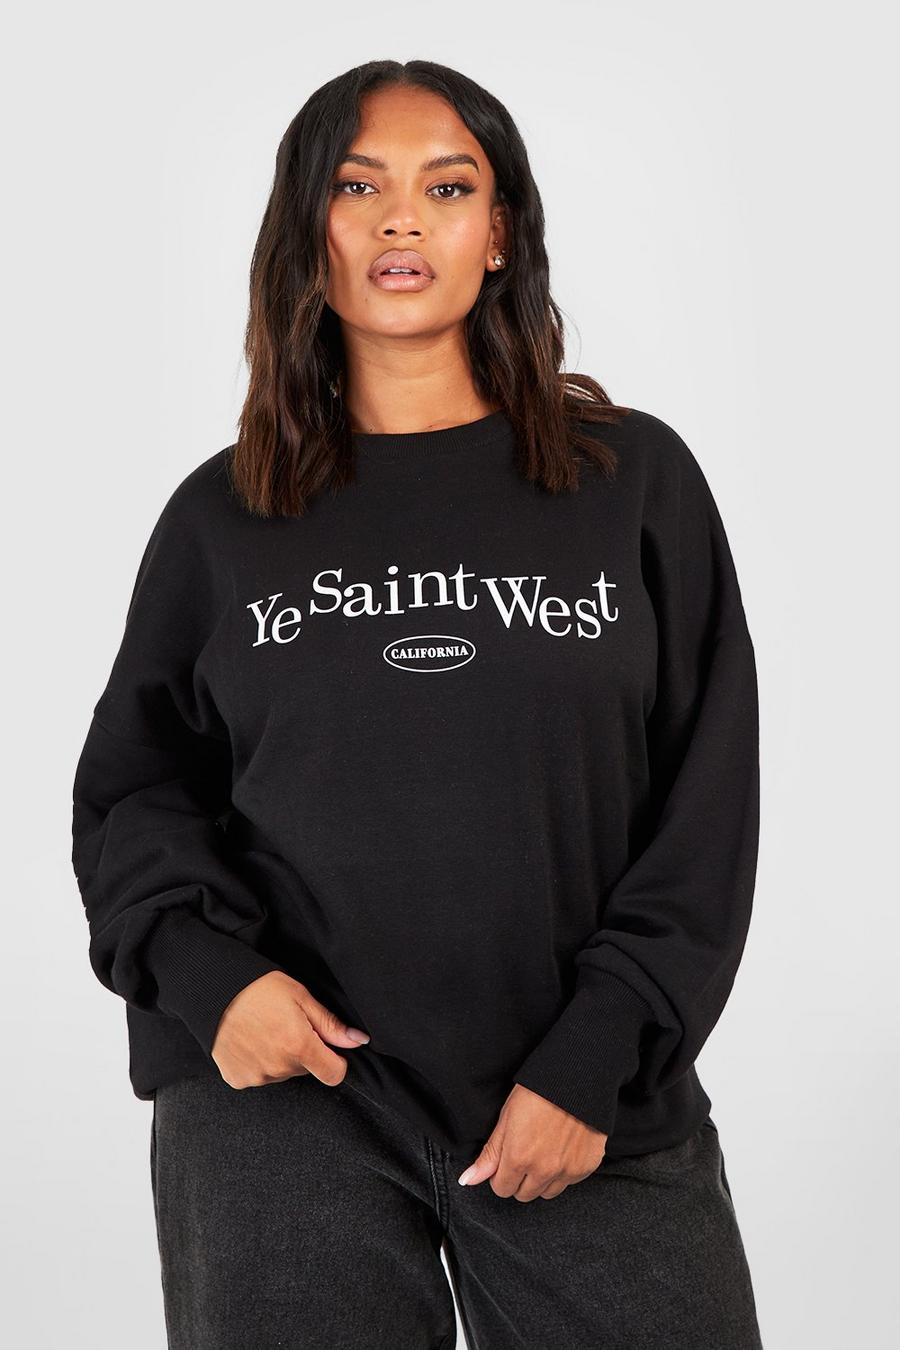 Plus Sweatshirt mit Ye Saint West Print, Schwarz noir